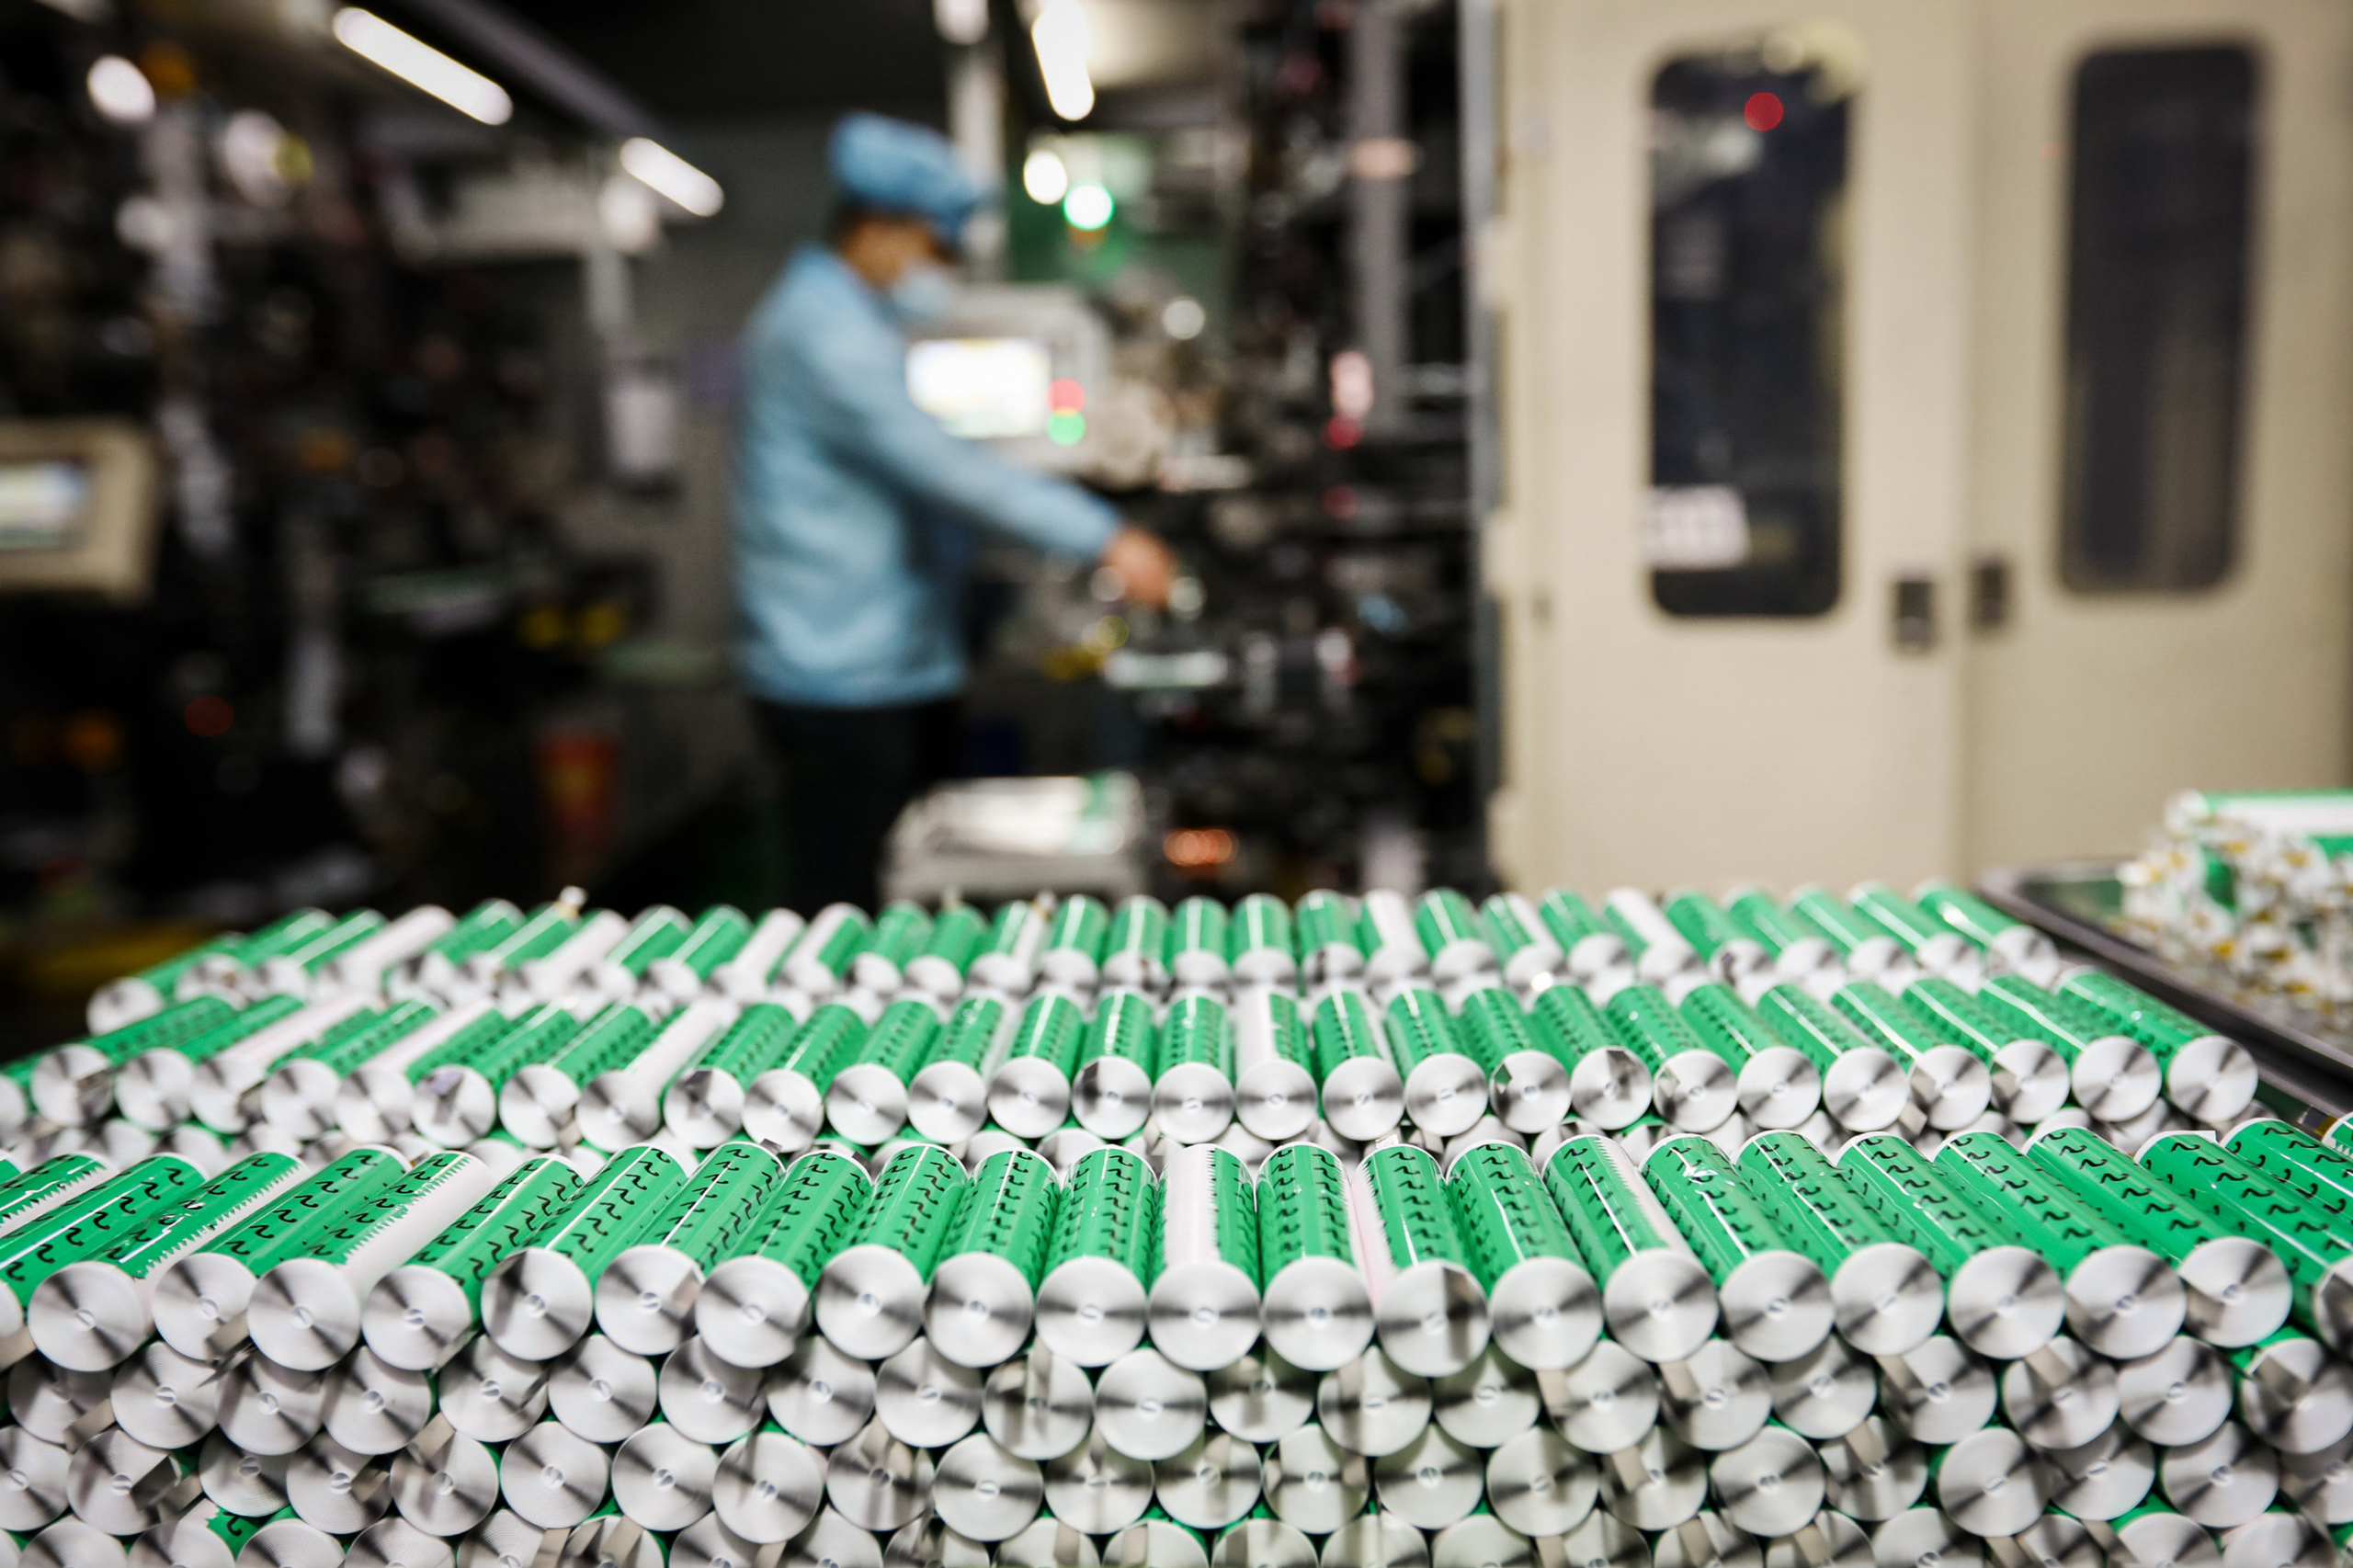 Pin lithium được trưng bày trong xưởng của một công ty sản xuất pin lithium ở tỉnh An Huy, Trung Quốc, ngày 14/11/2020. (Ảnh: STR/AFP qua Getty Images)